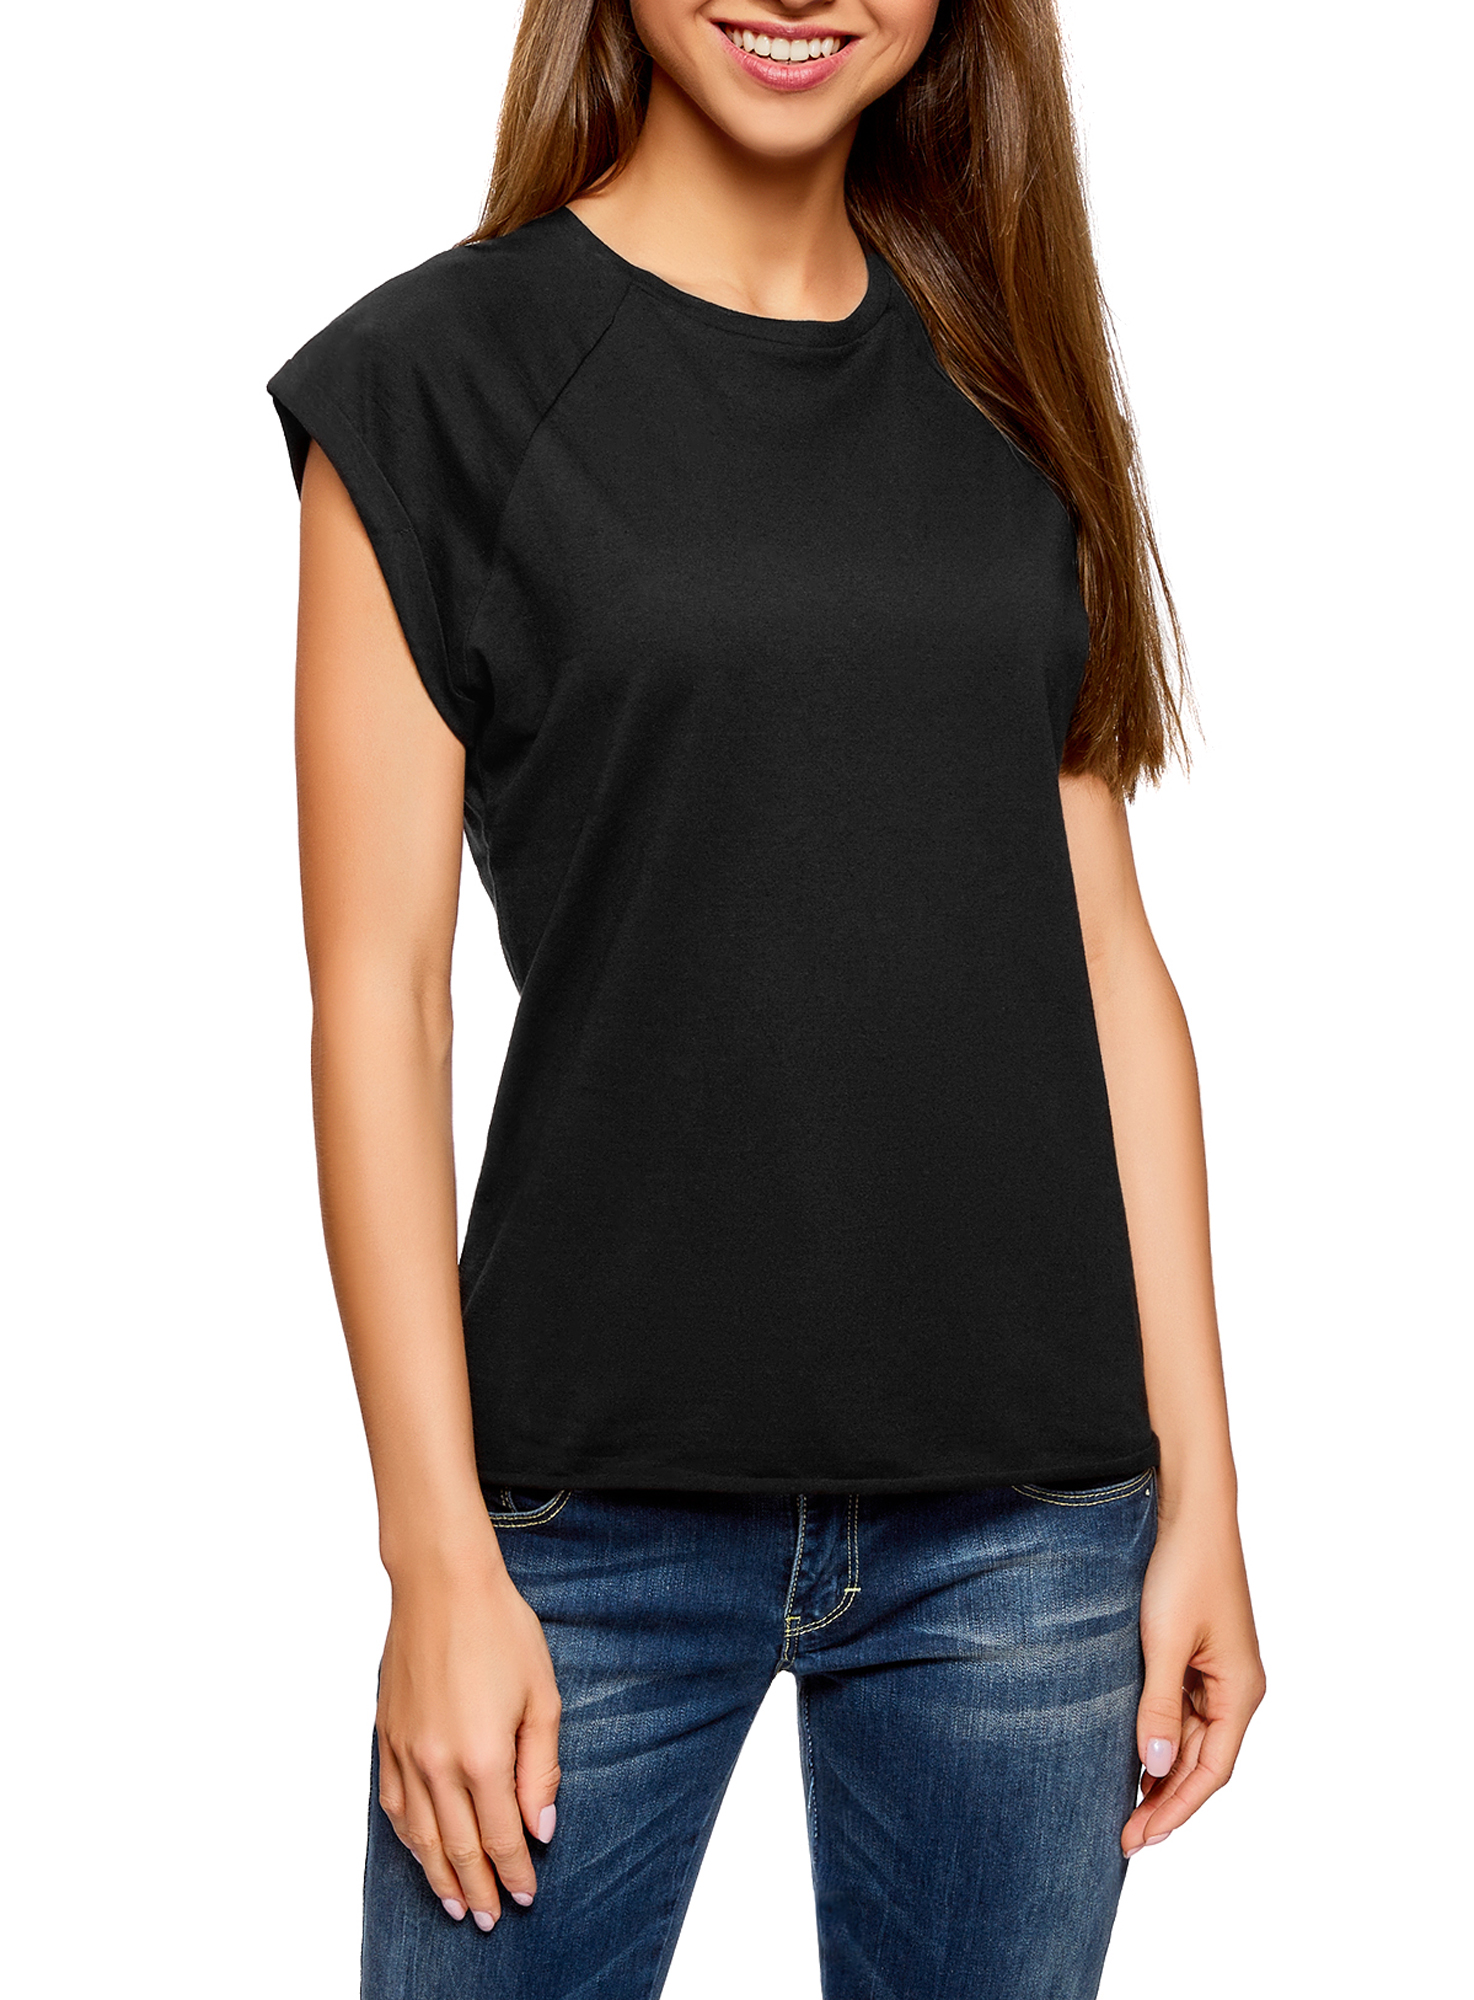 Комплект футболок женских oodji 14707001T2 черных S